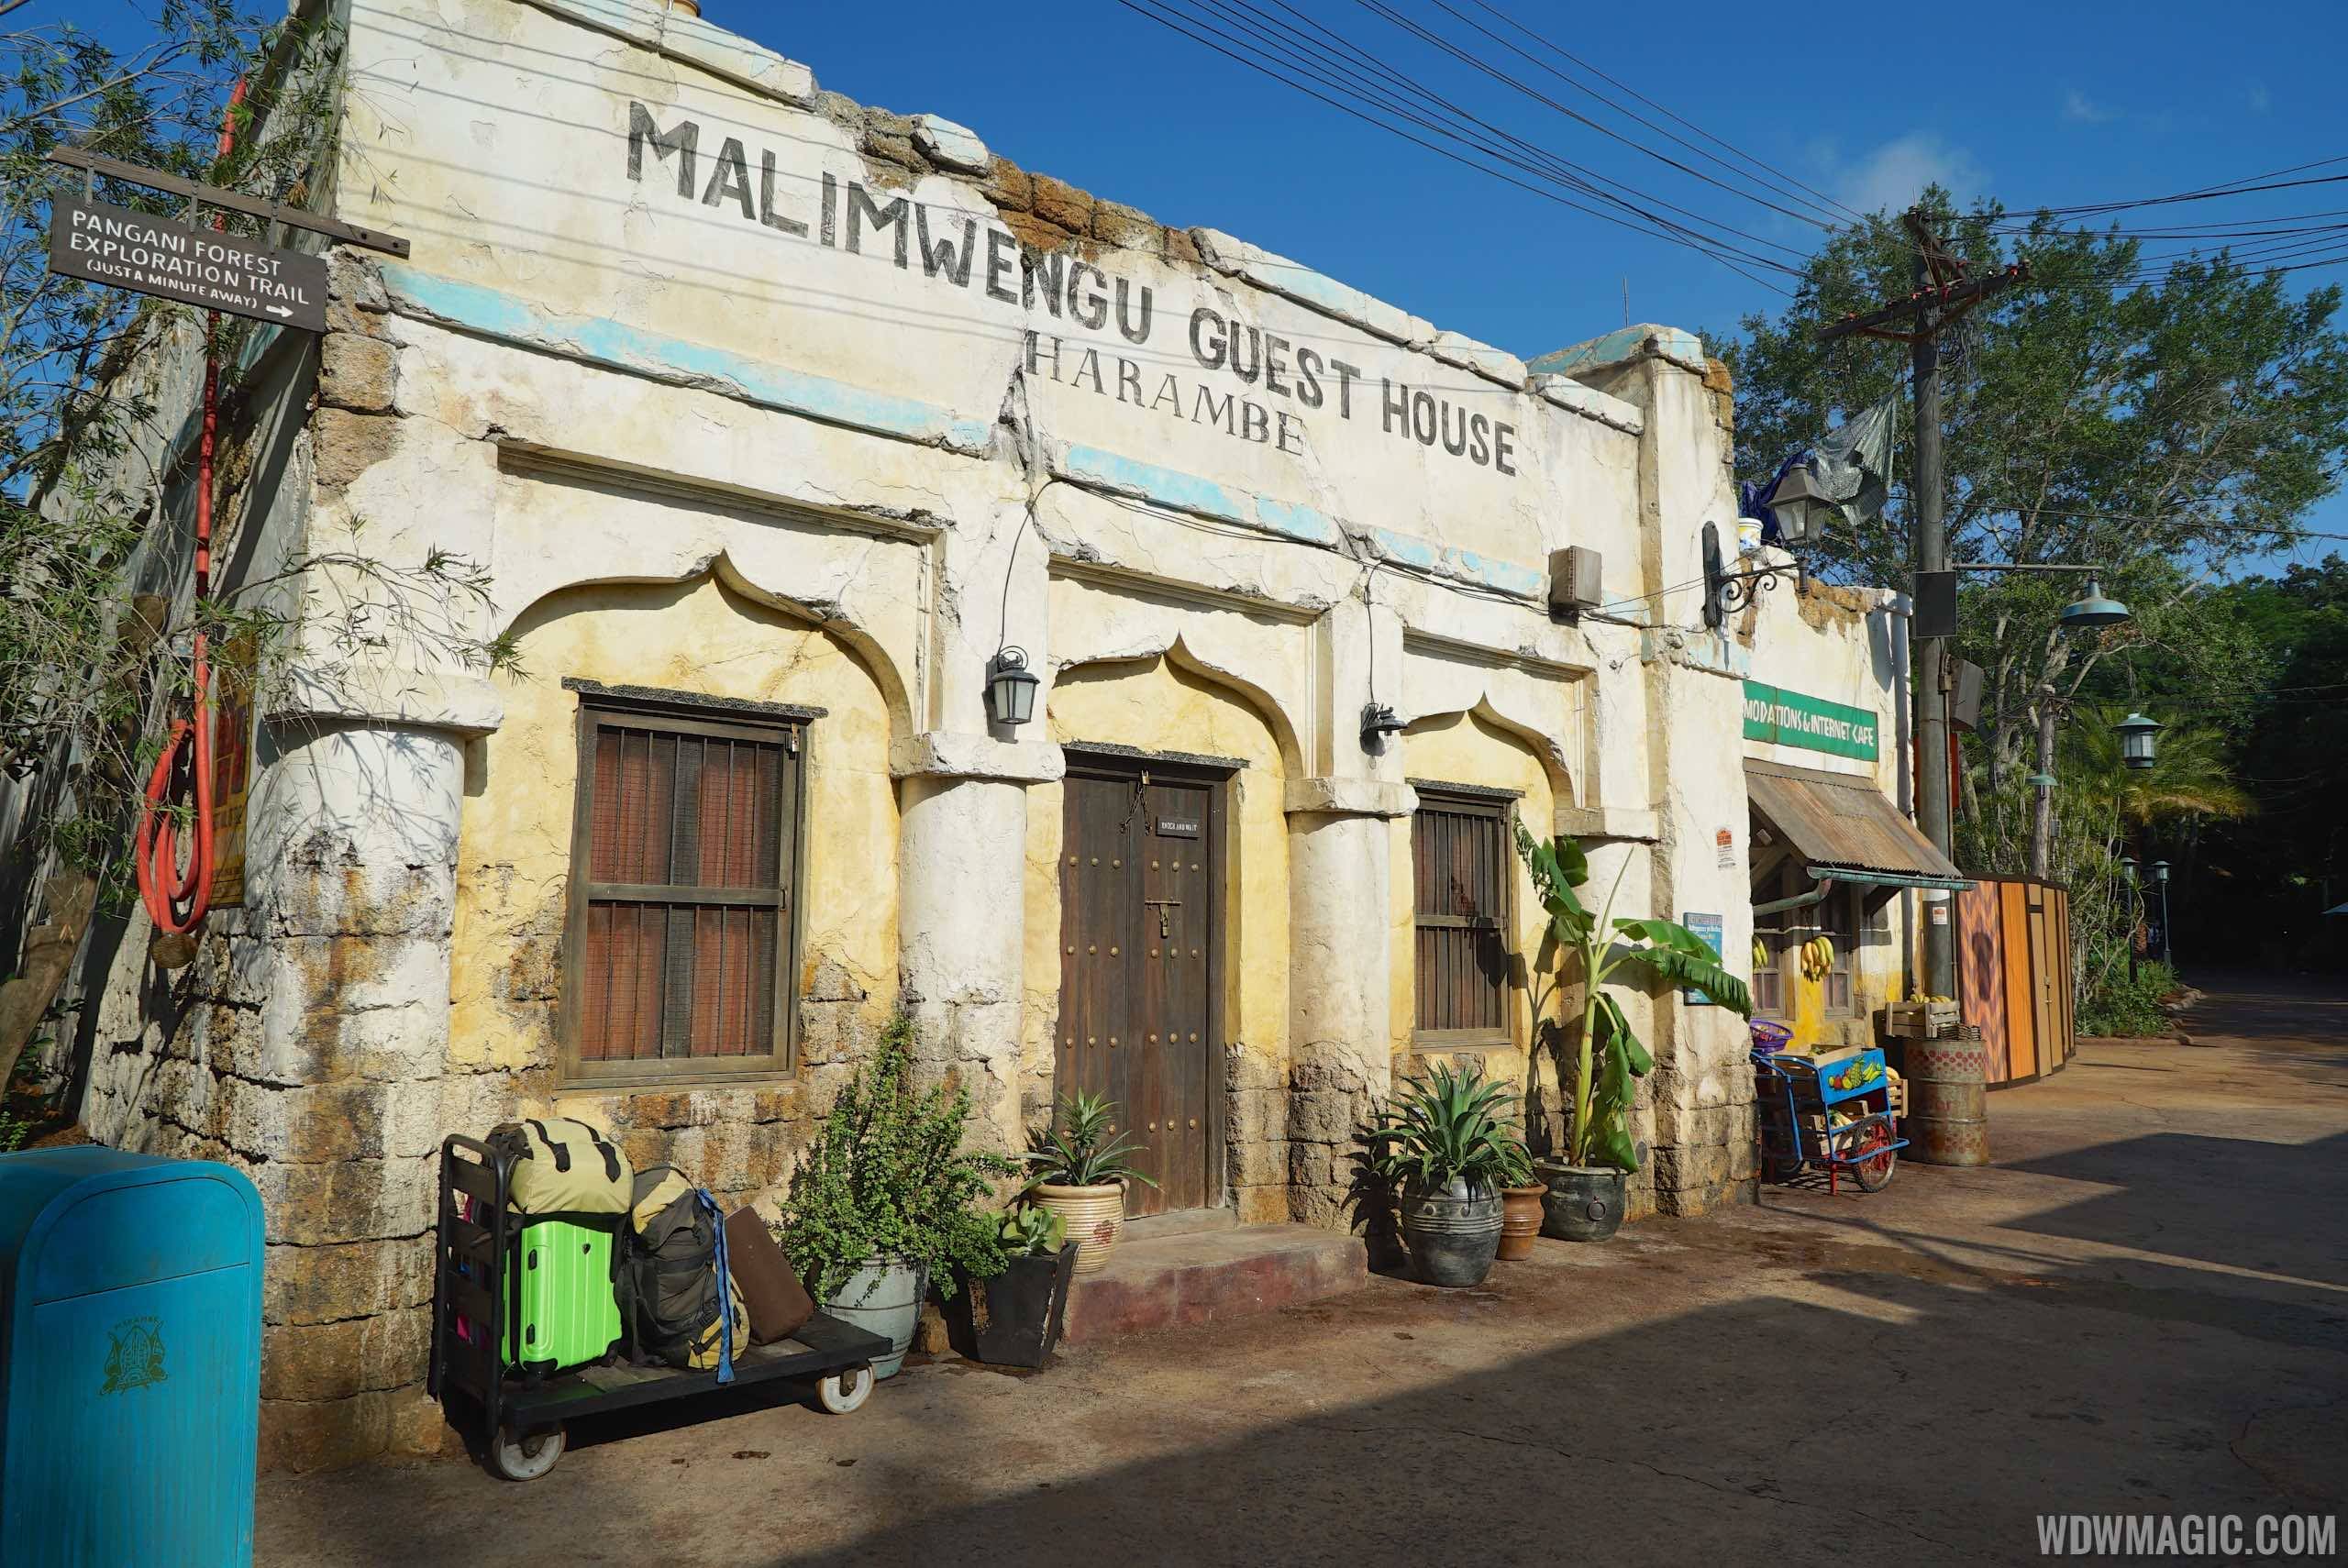 Harambe Market - Malimwengu Guest House